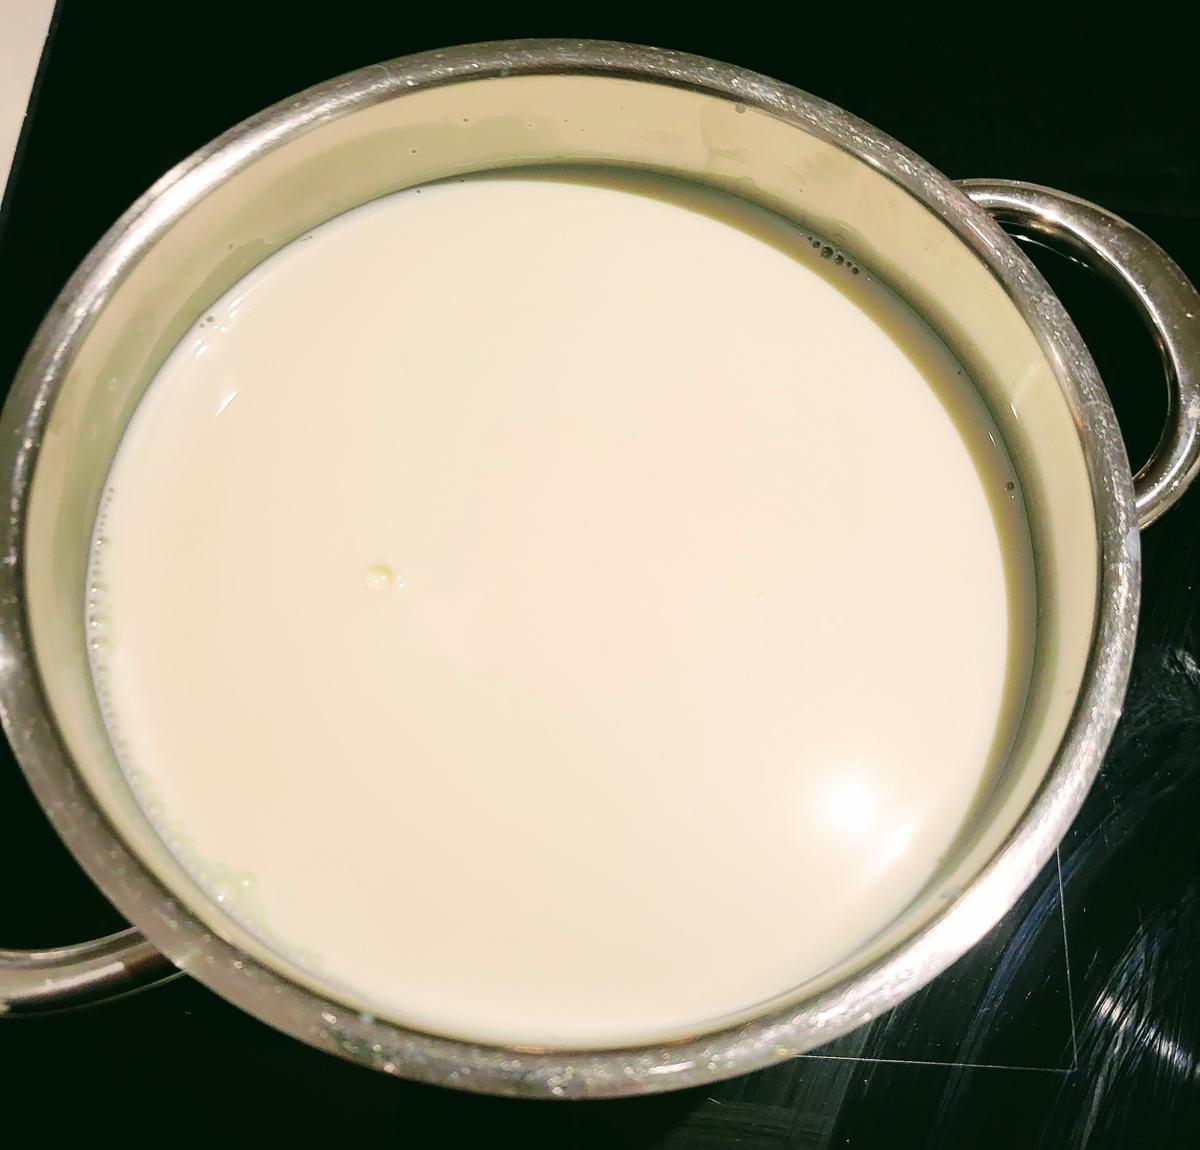 Joghurt selbst gemacht - aus der Kochkiste - Rezept - Bild Nr. 2